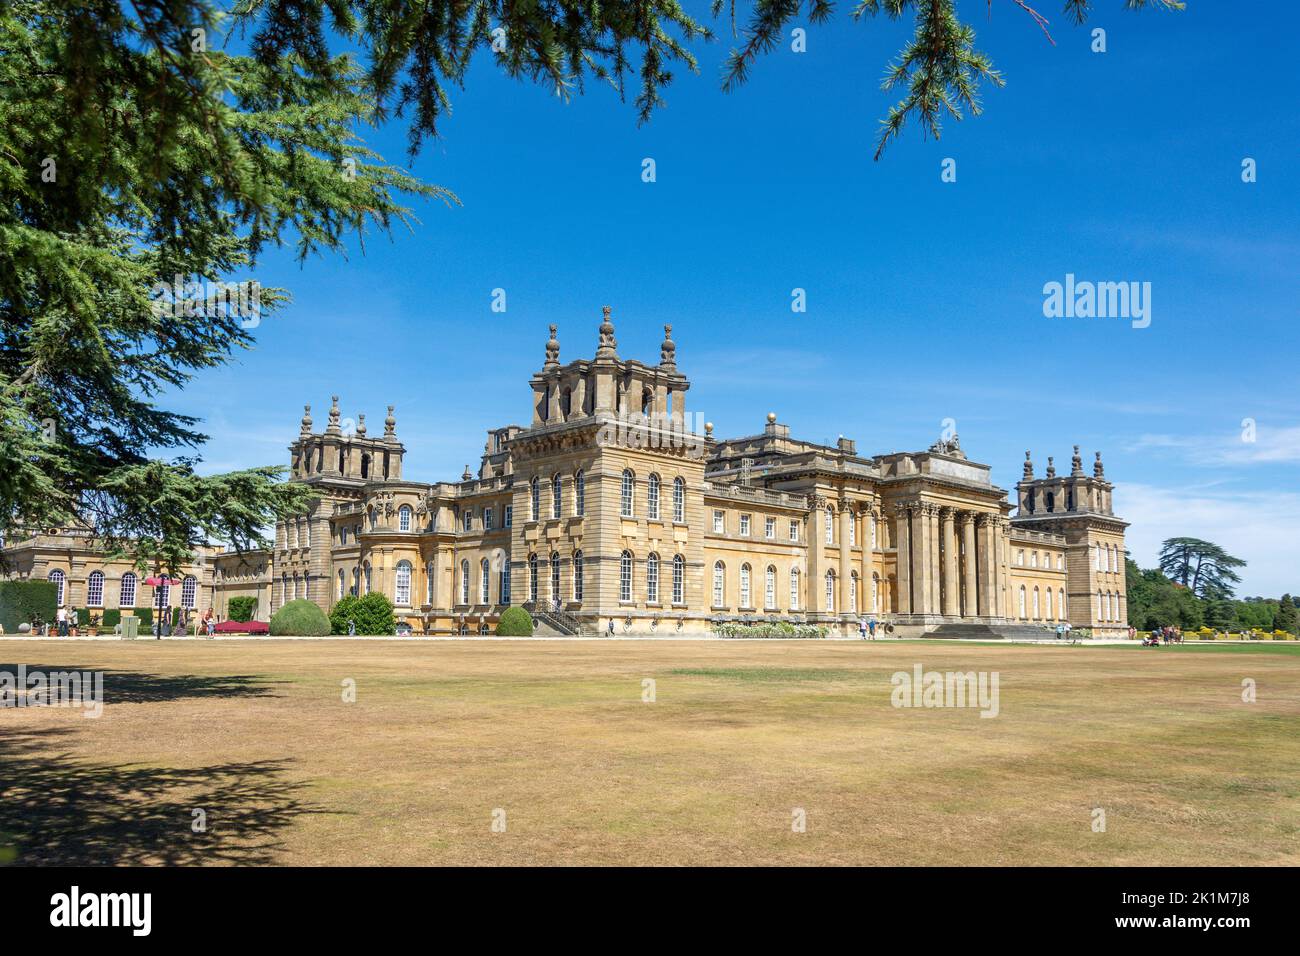 Blick auf den Palast vom South Lawn, Blenheim Palace, Woodstock, Oxfordshire, England, Vereinigtes Königreich Stockfoto